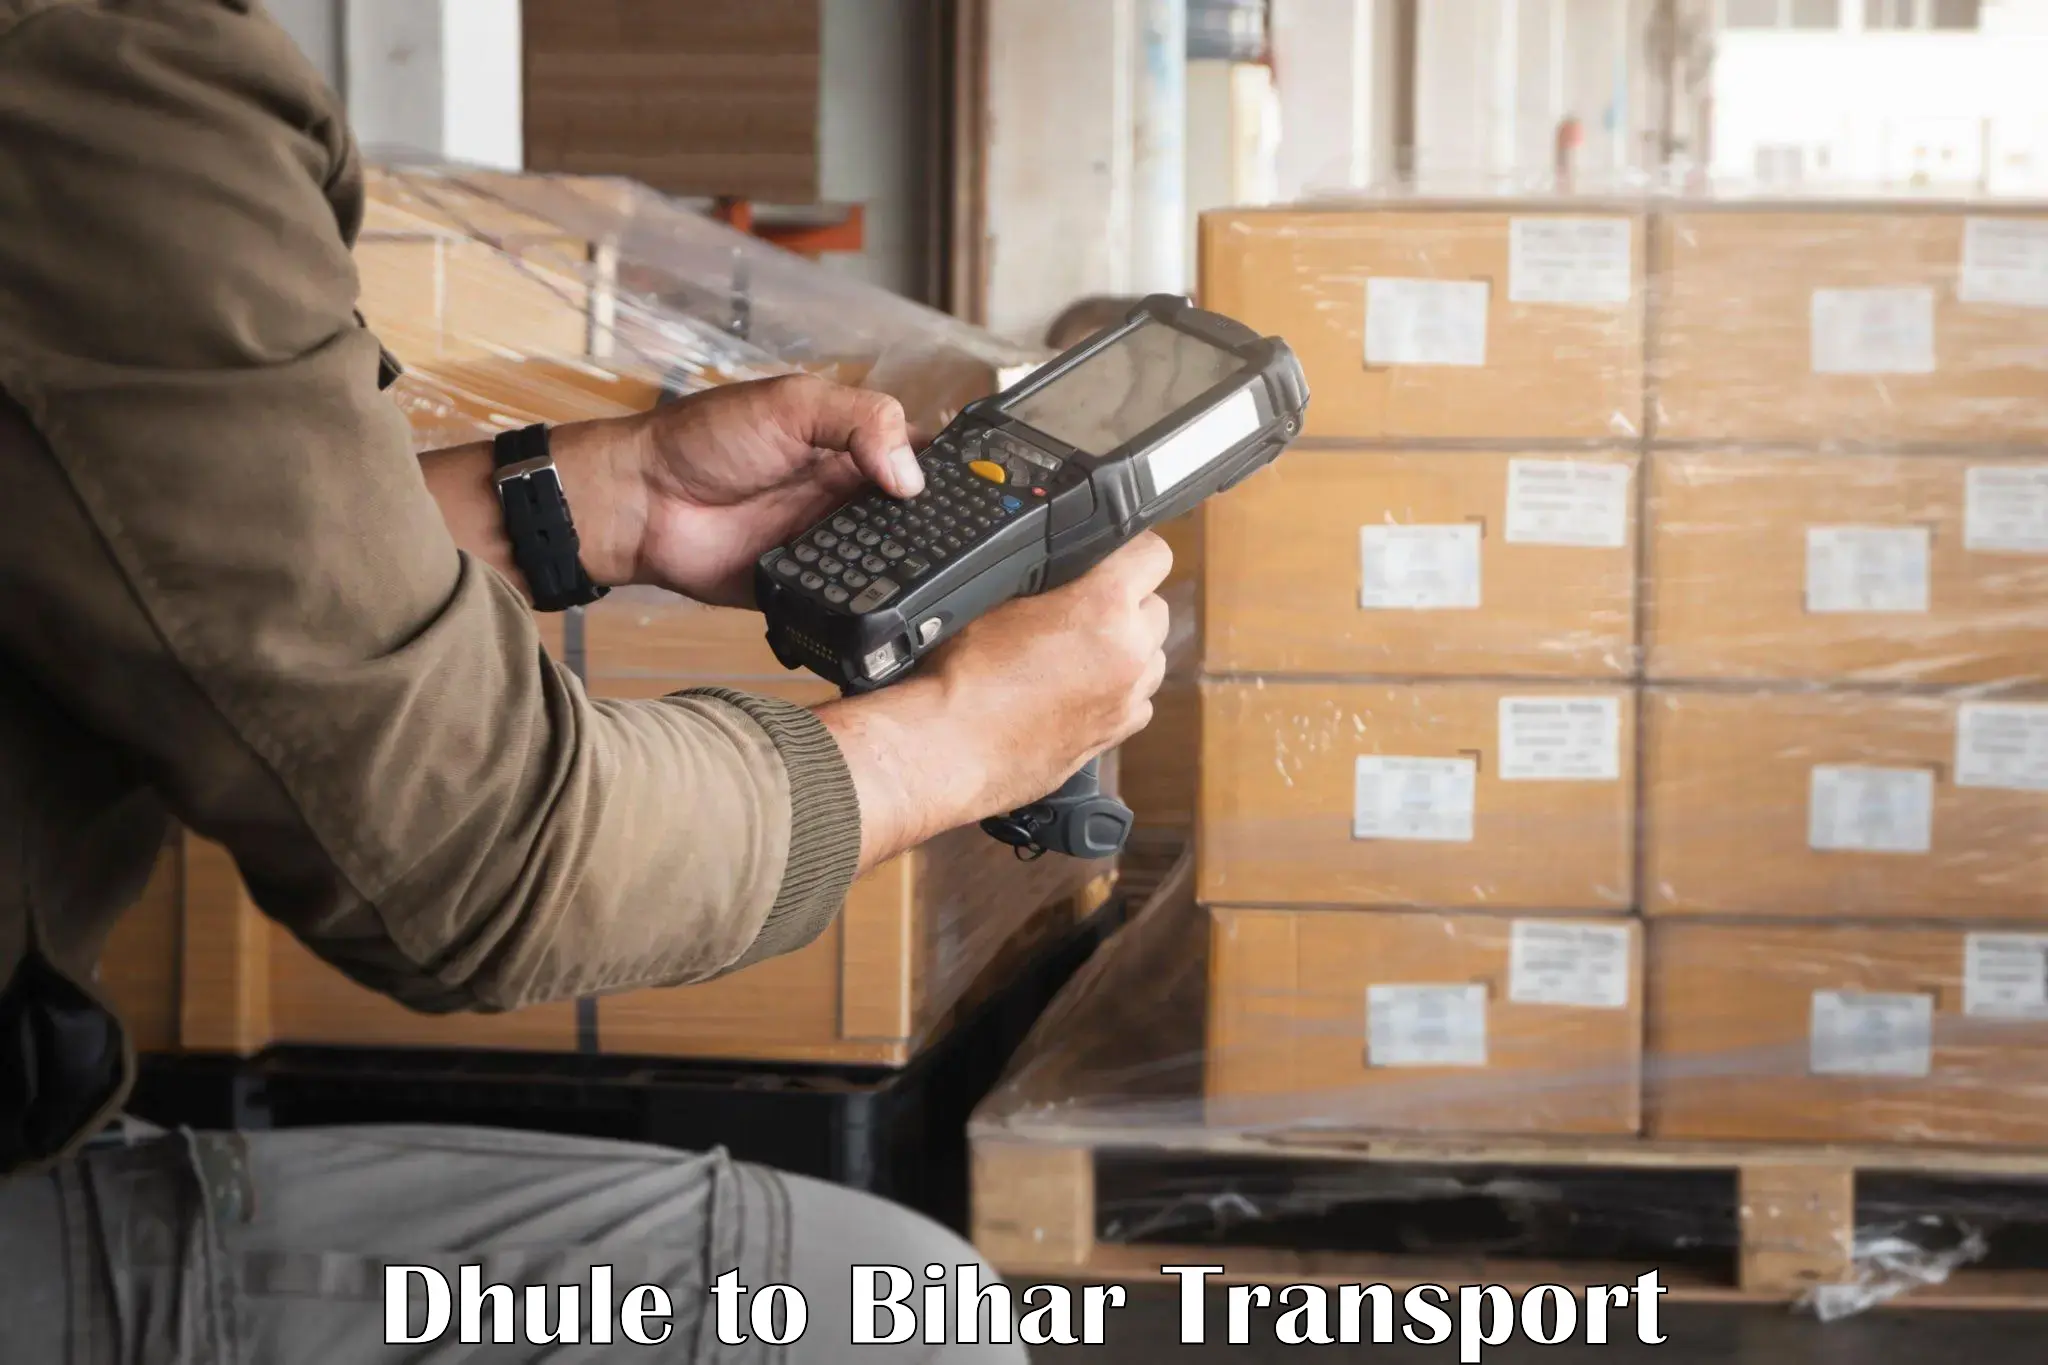 Shipping partner Dhule to Saran